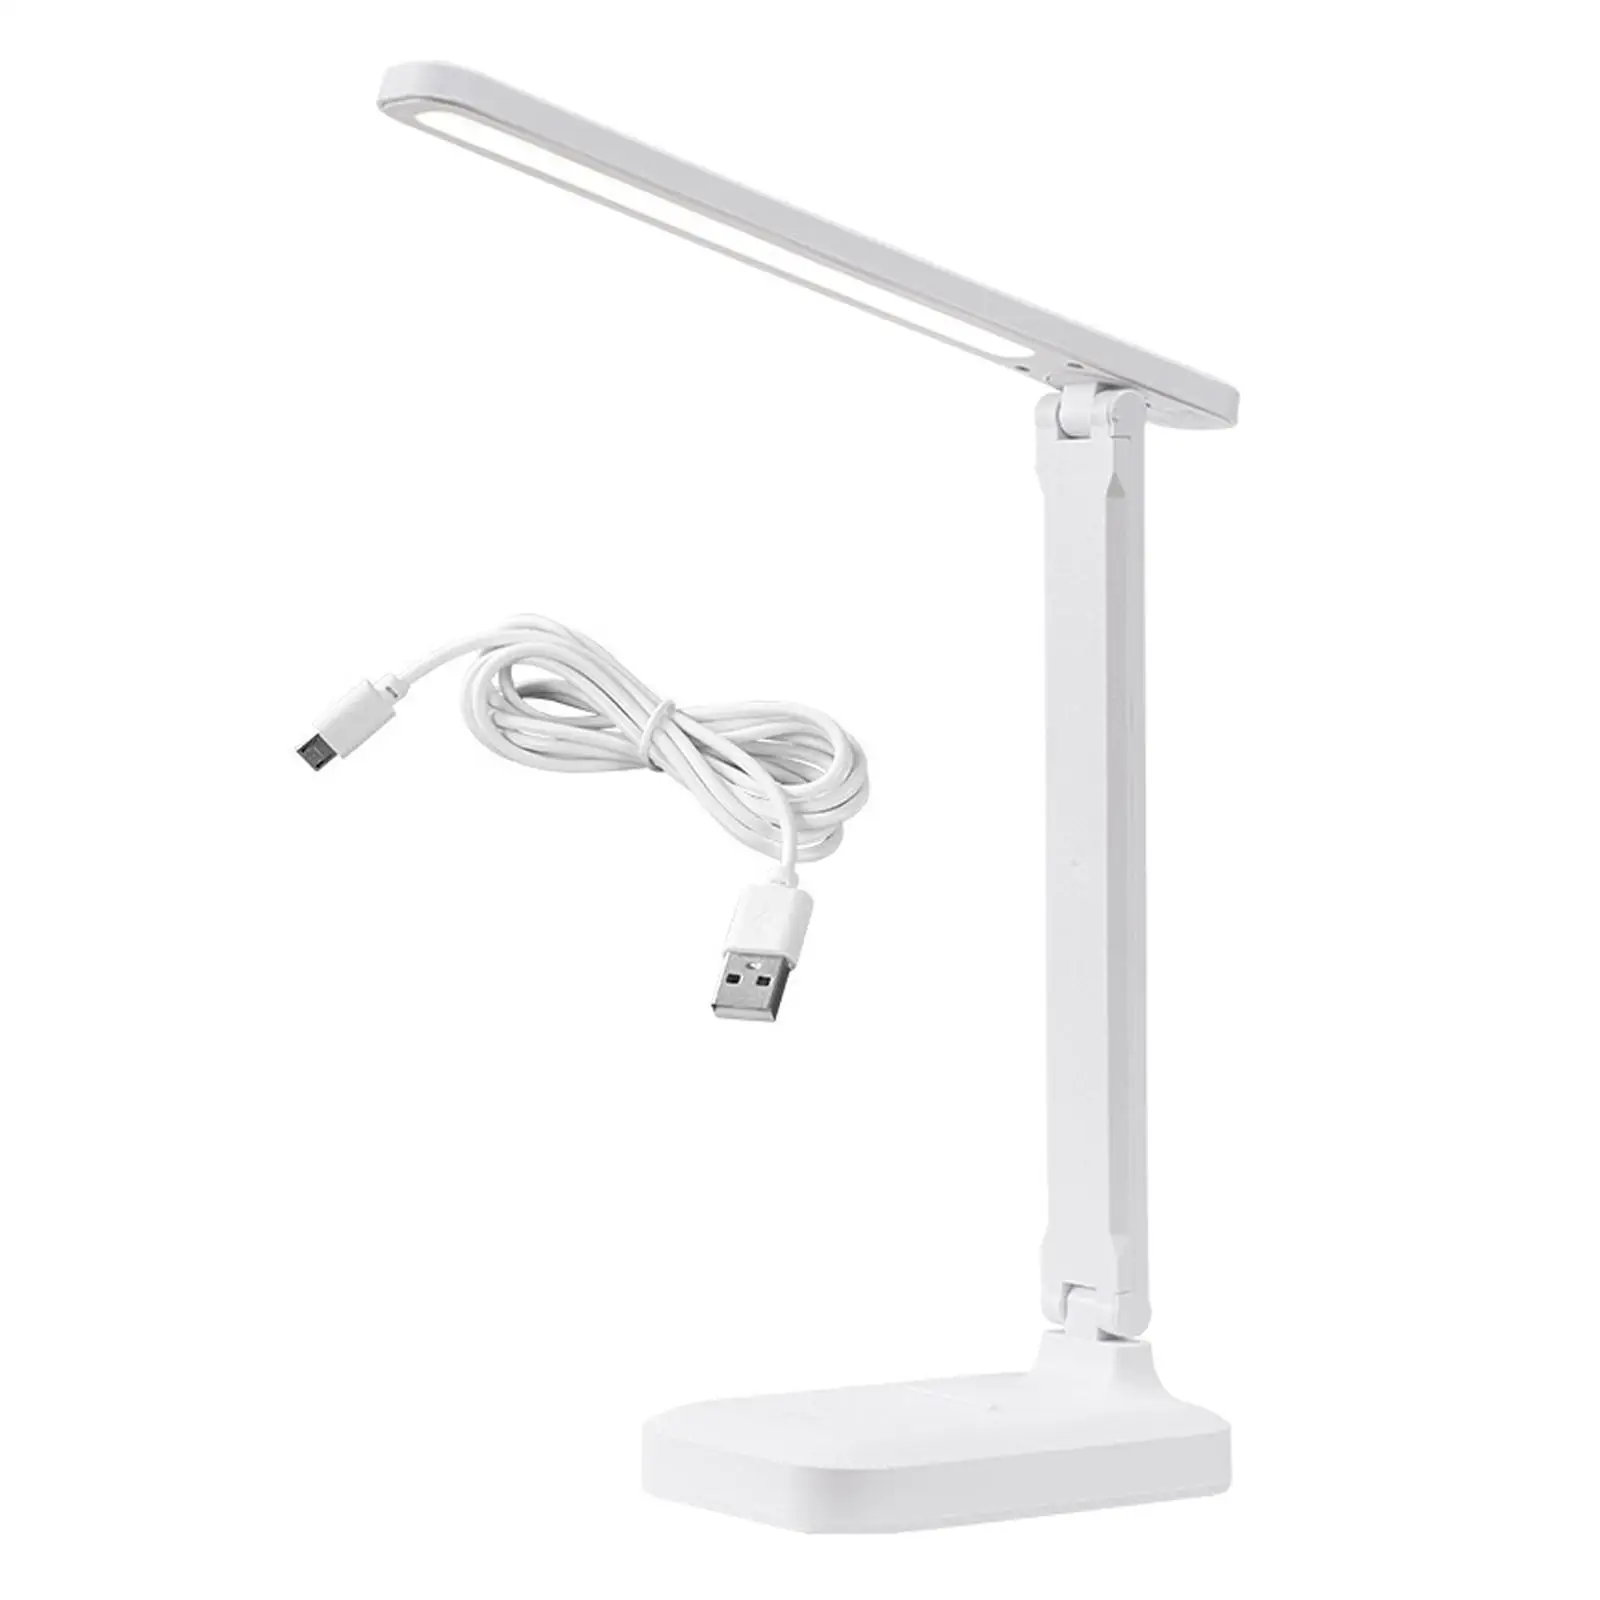 LED Desk Lamp Modern Portable 3 Adjustable Brightness Table Light Desk Night Light for Dorm Gift Home Study Room Bedroom